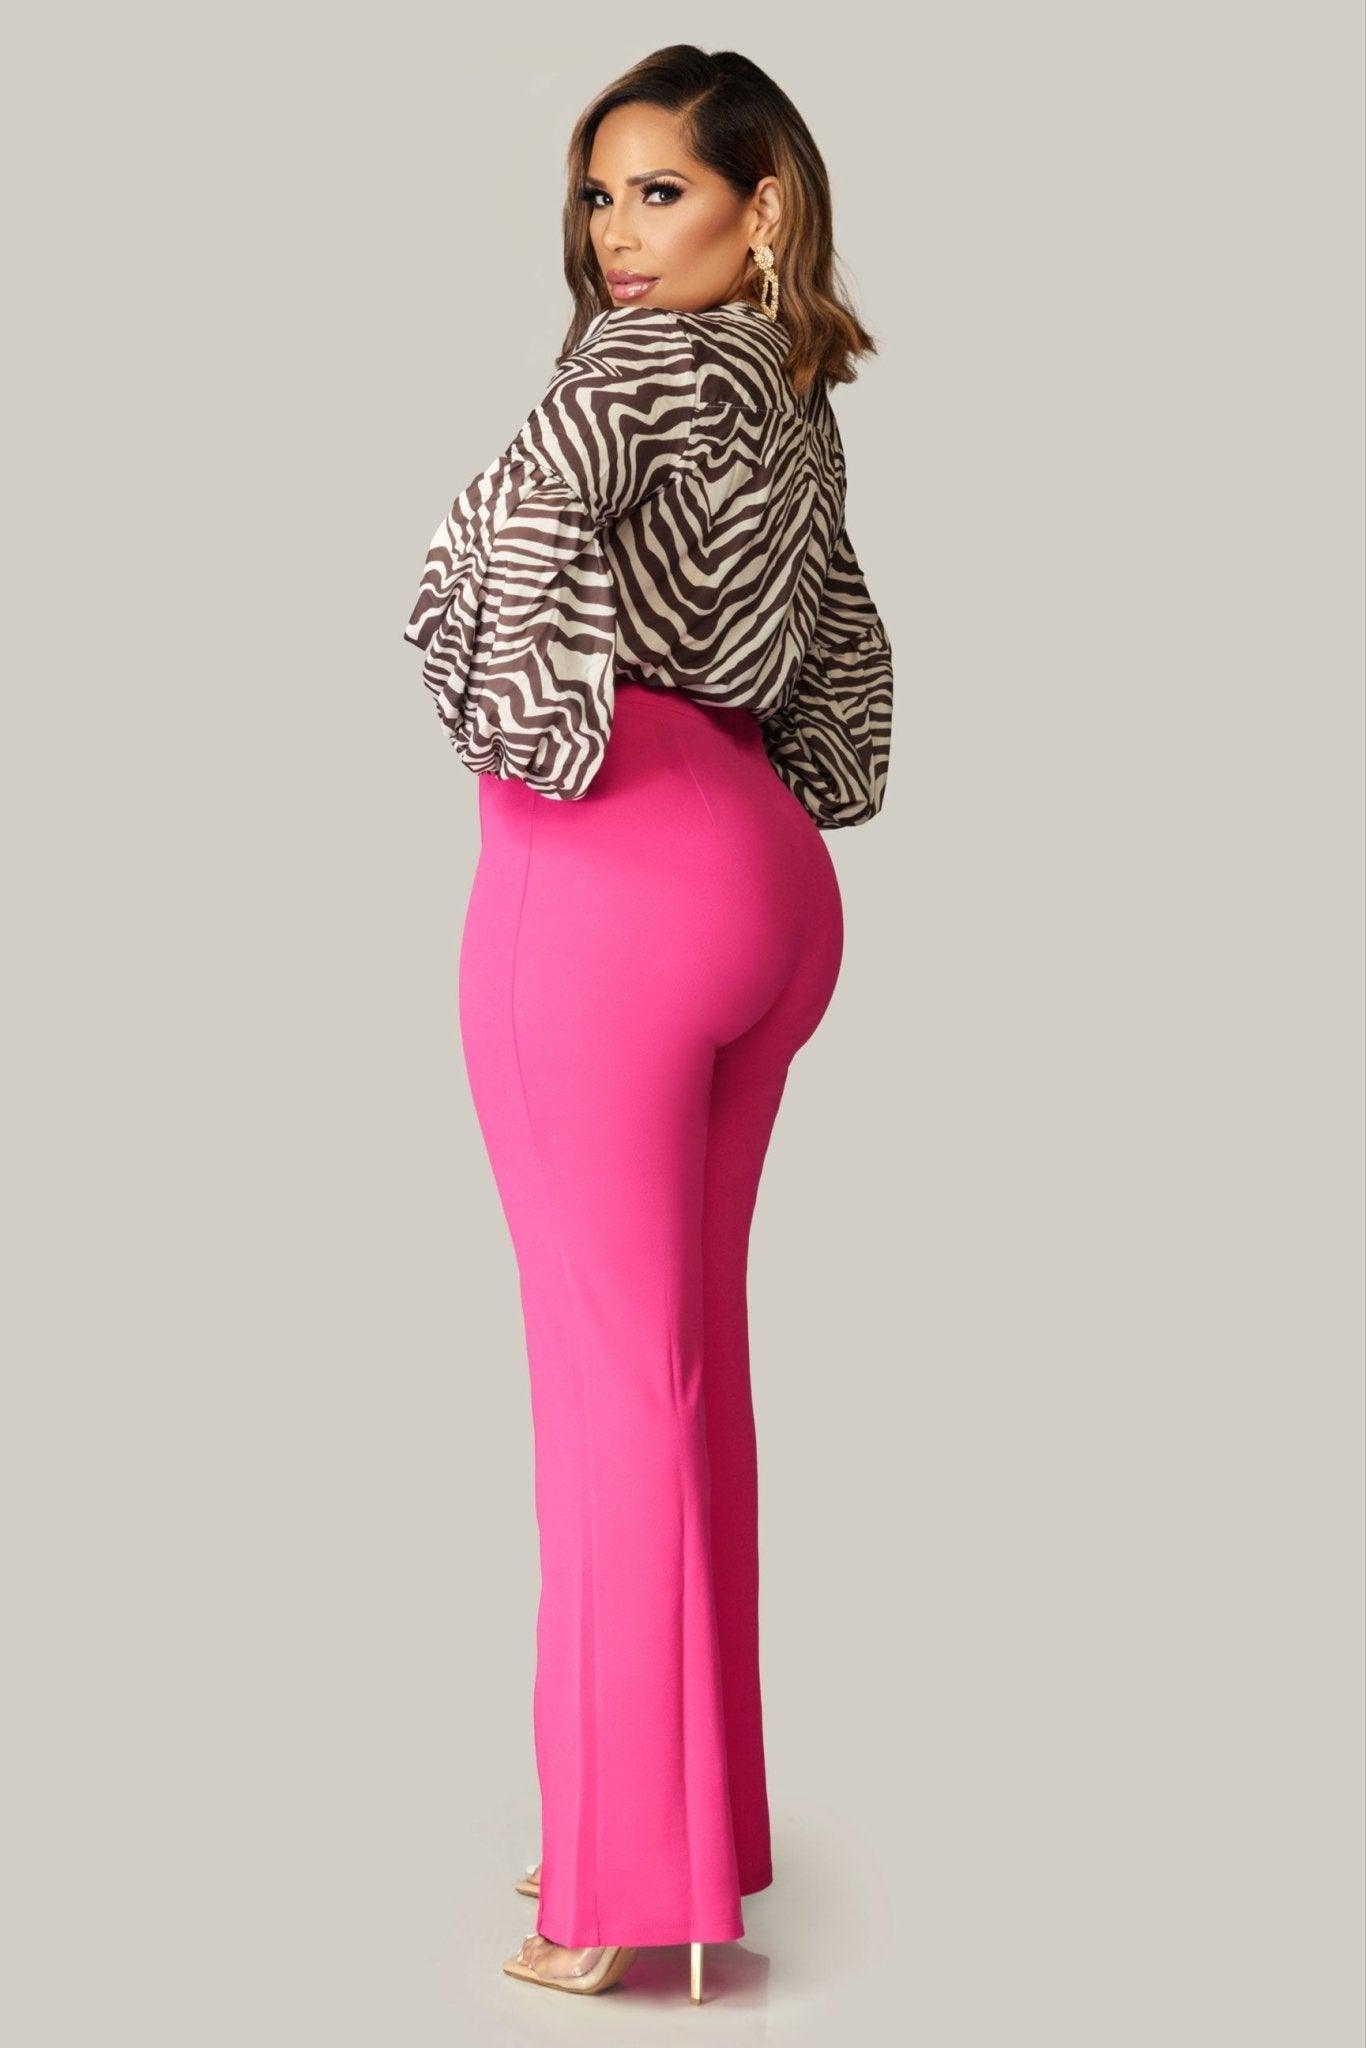 Celia Print Zebra Pattern V Neck Long Sleeve Blouse - MY SEXY STYLES